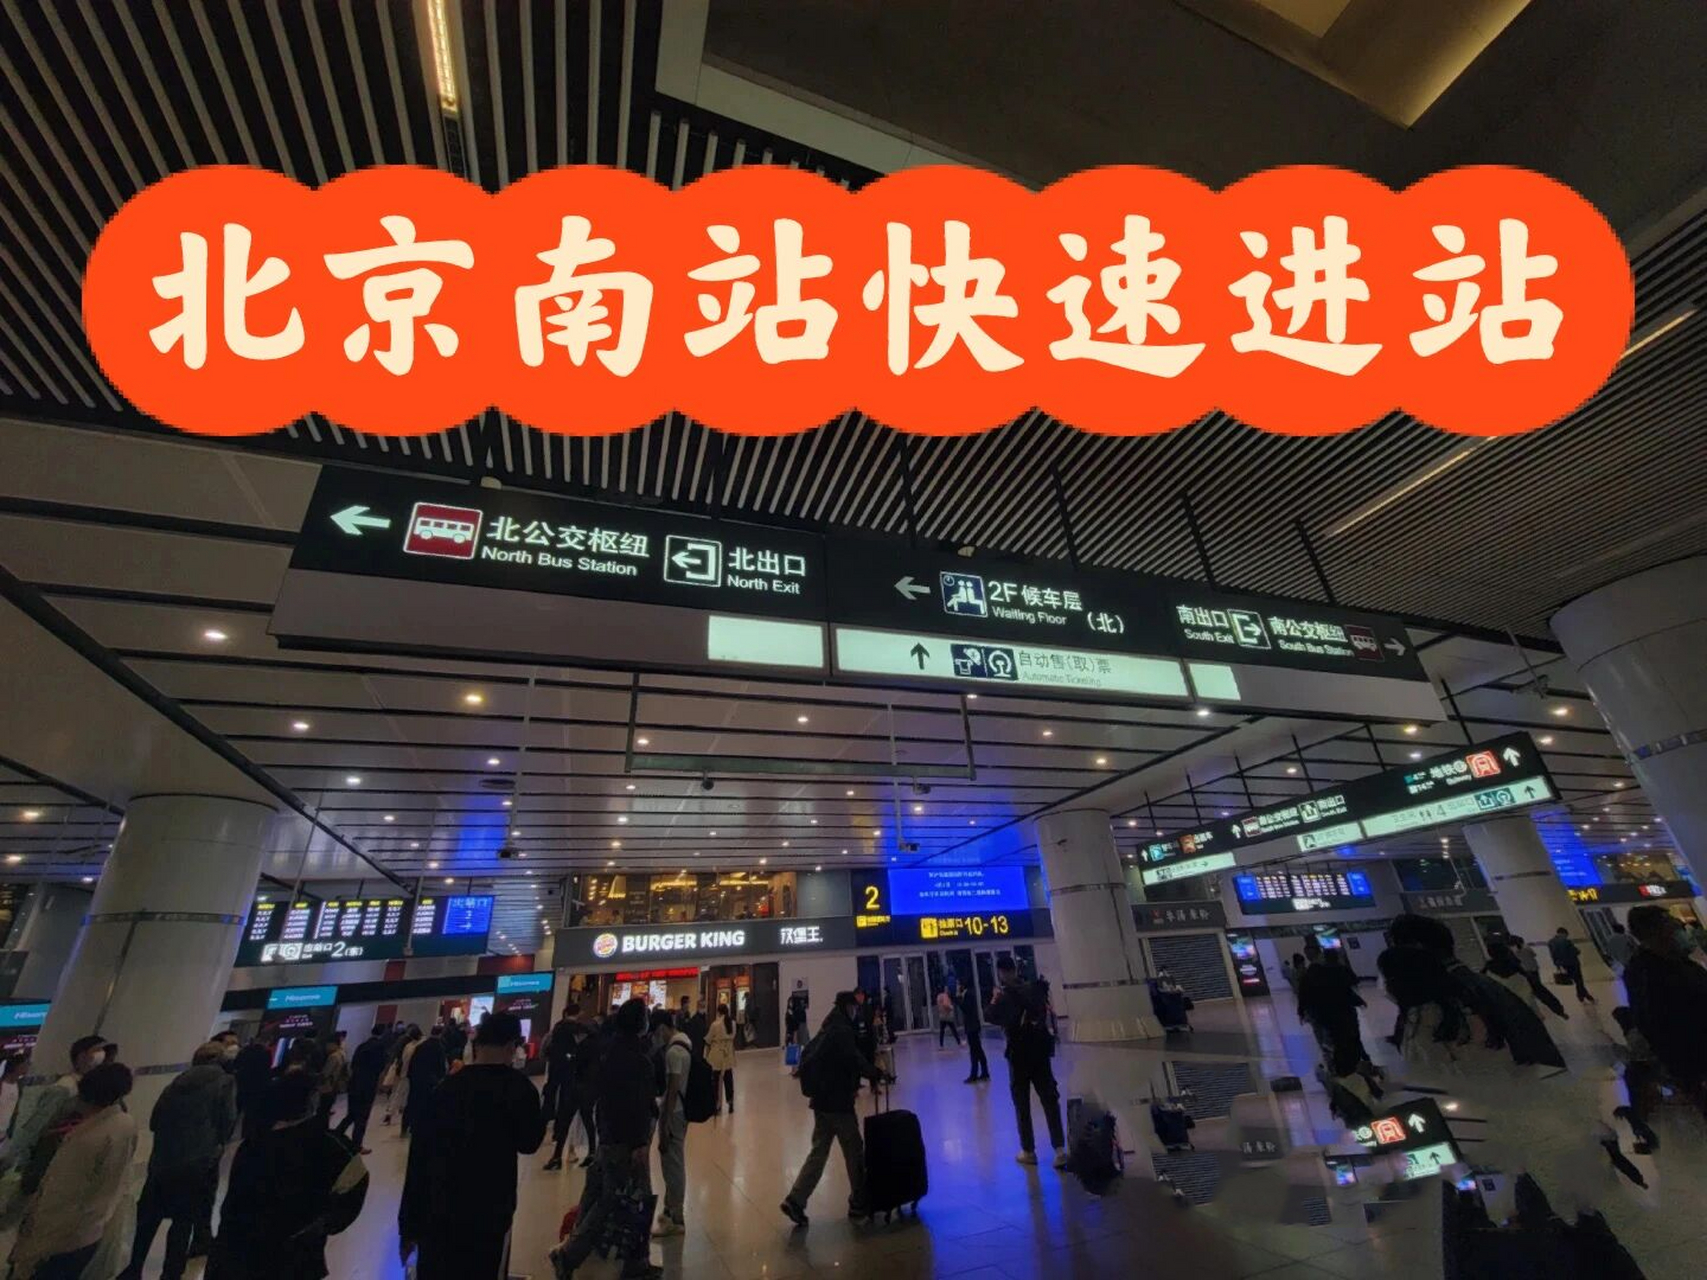 五一北京南站快速进站(不排队)地铁篇 上次分享了一下打车到北京南站